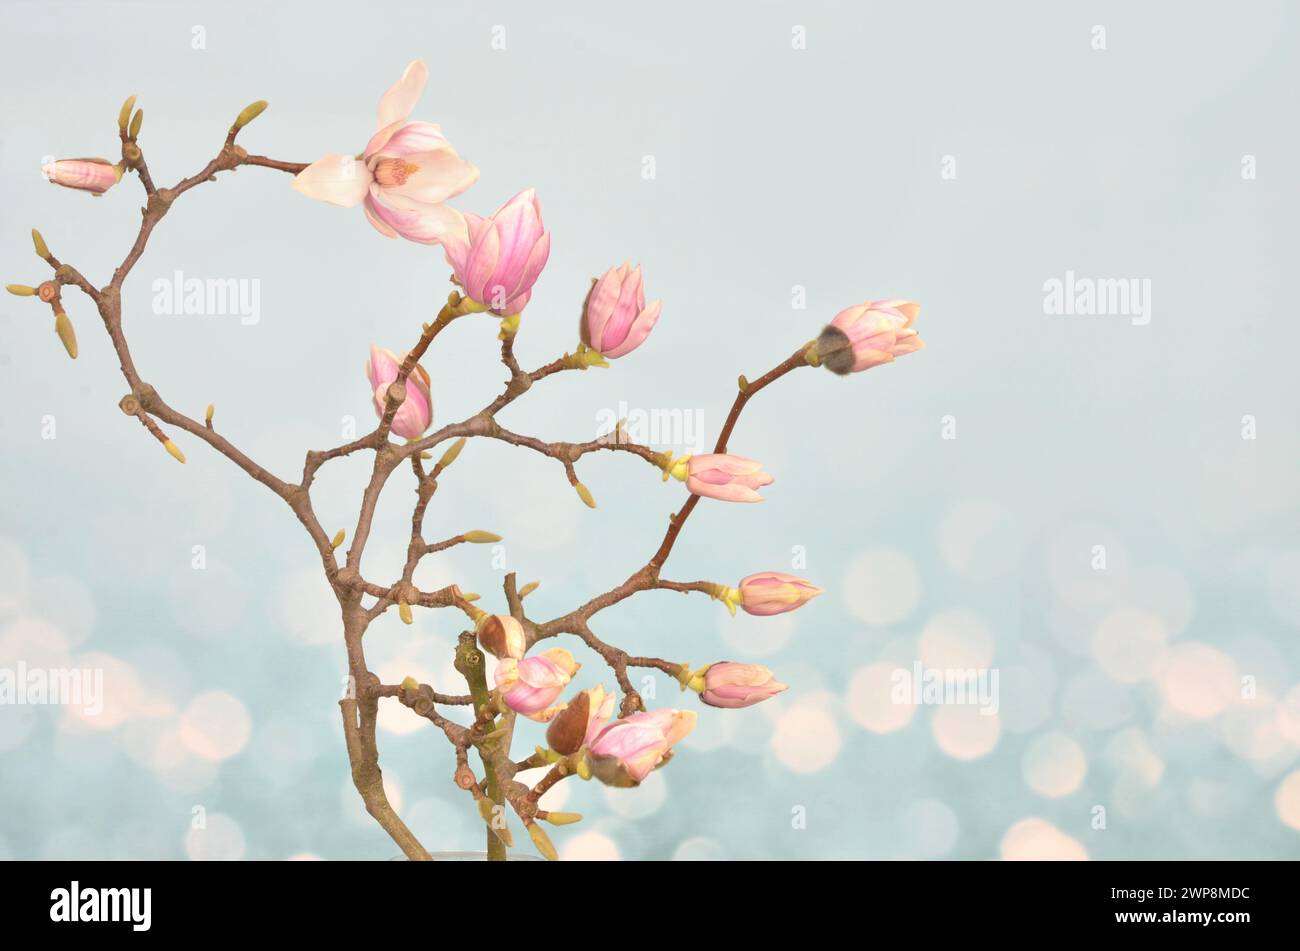 Fleurs de magnolia rose et bourgeons sur les branches avec un espace vide à remplir sur fond clair. Banque D'Images